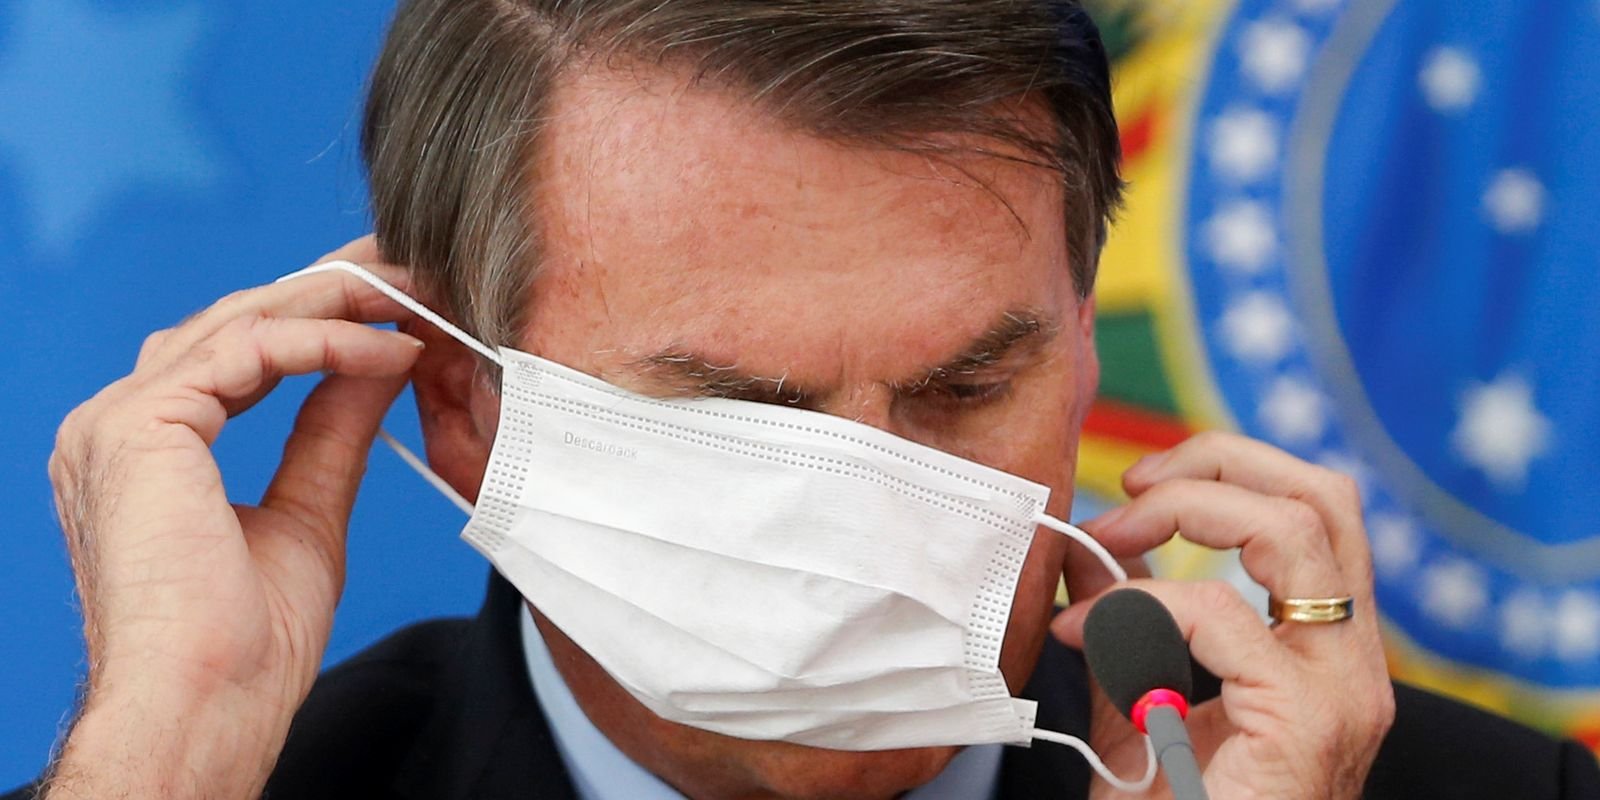 CGU conclui que certificado de vacinação de Bolsonaro é falso